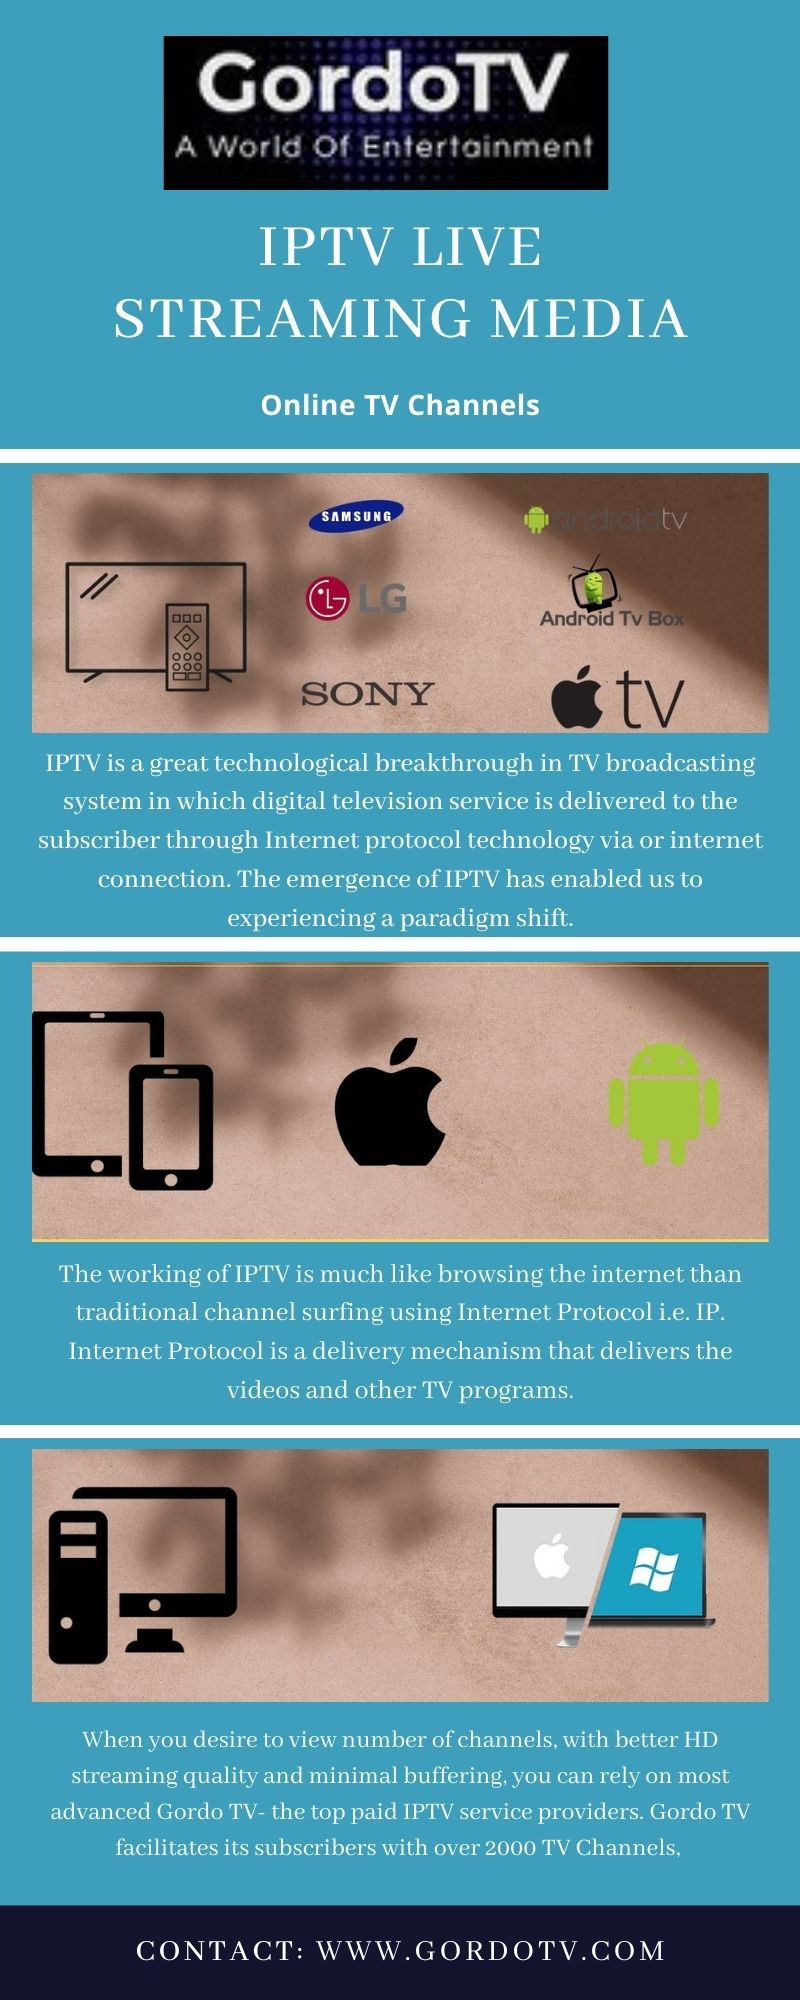 IPTV Live Streaming Media.jpg  by Gordotv